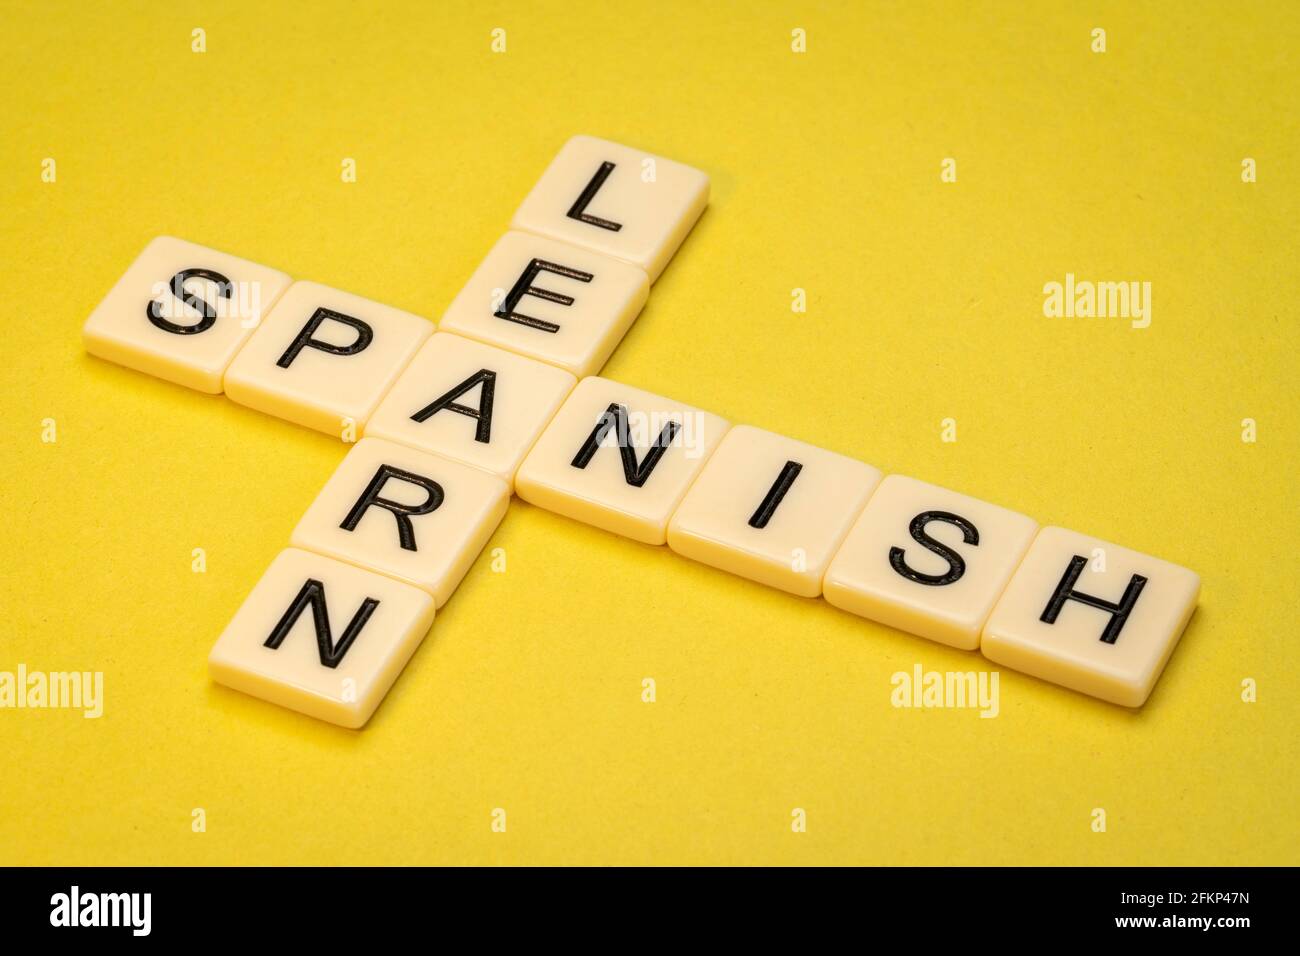 Spanisch lernen Kreuzworträtsel in Elfenbein Buchstaben Fliesen gegen gelb strukturiert Papier Stockfoto